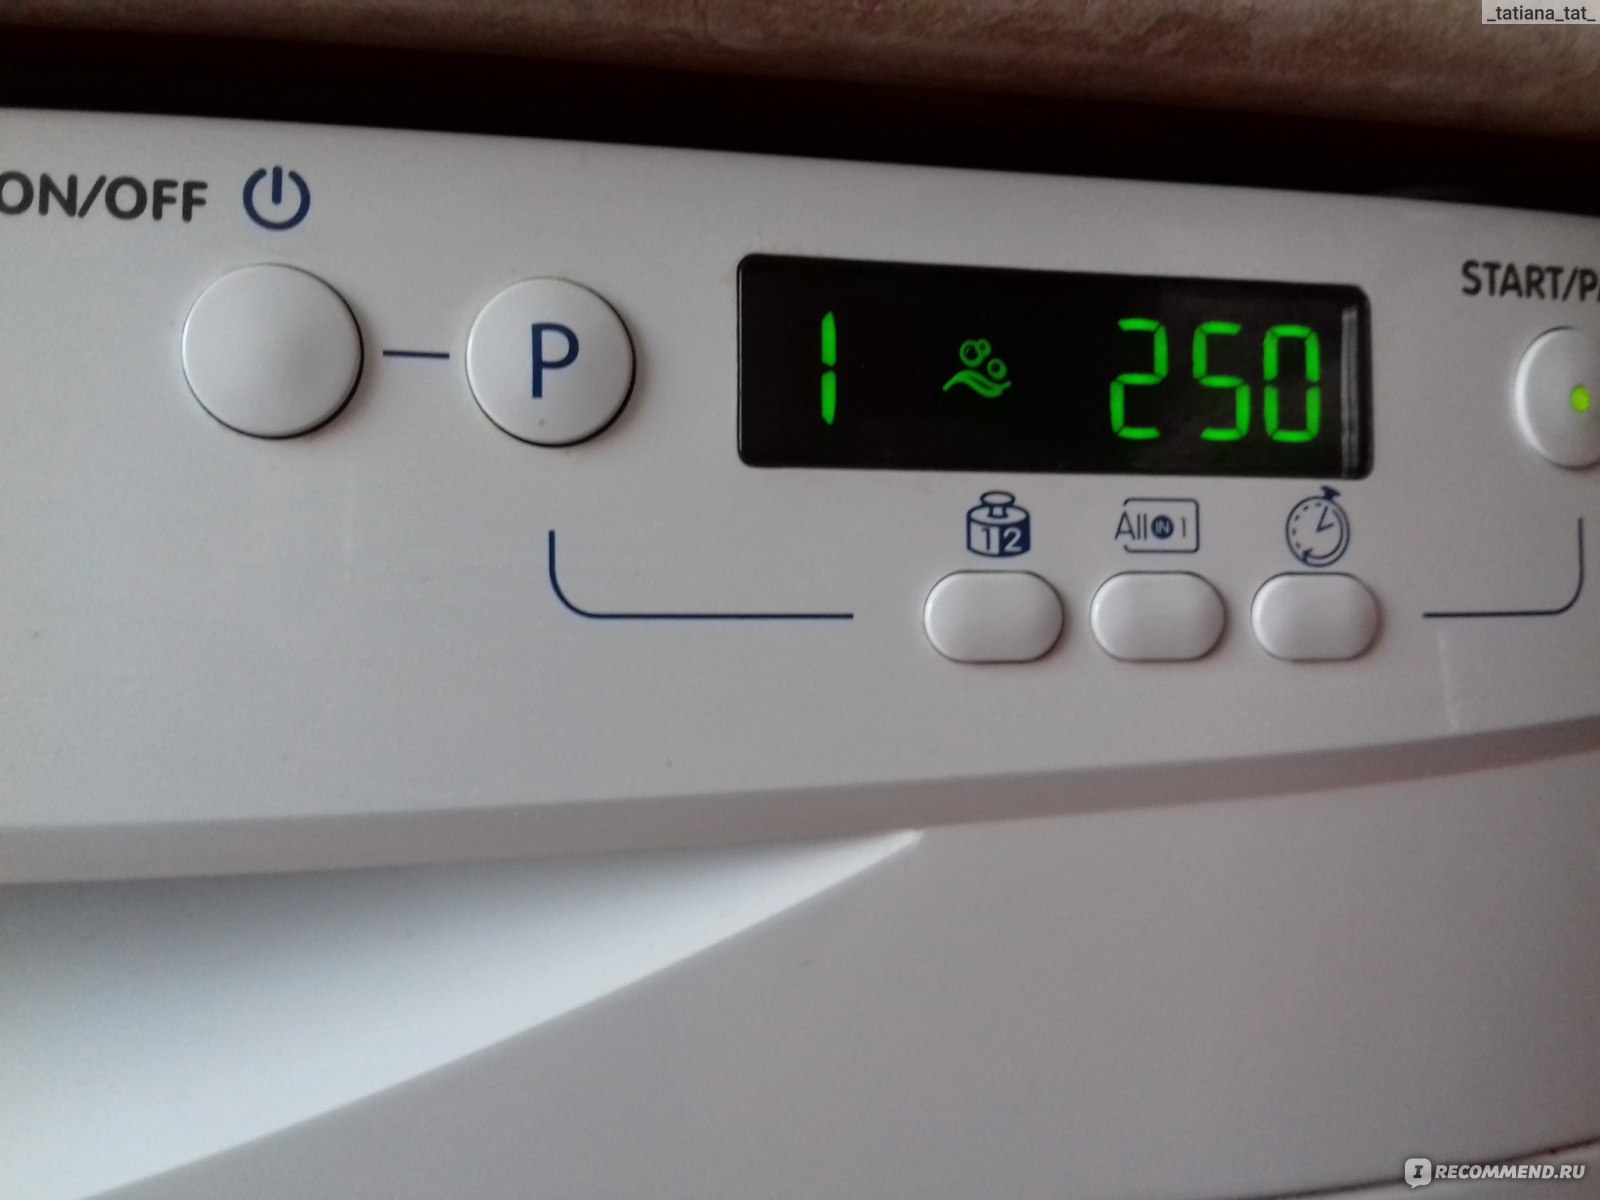 Индезит с дисплеем. Индезит посудомойка 6 индикатор. Индикаторы на посудомоечной машине Индезит. Посудомоечная машина Индезит 5737 табло.